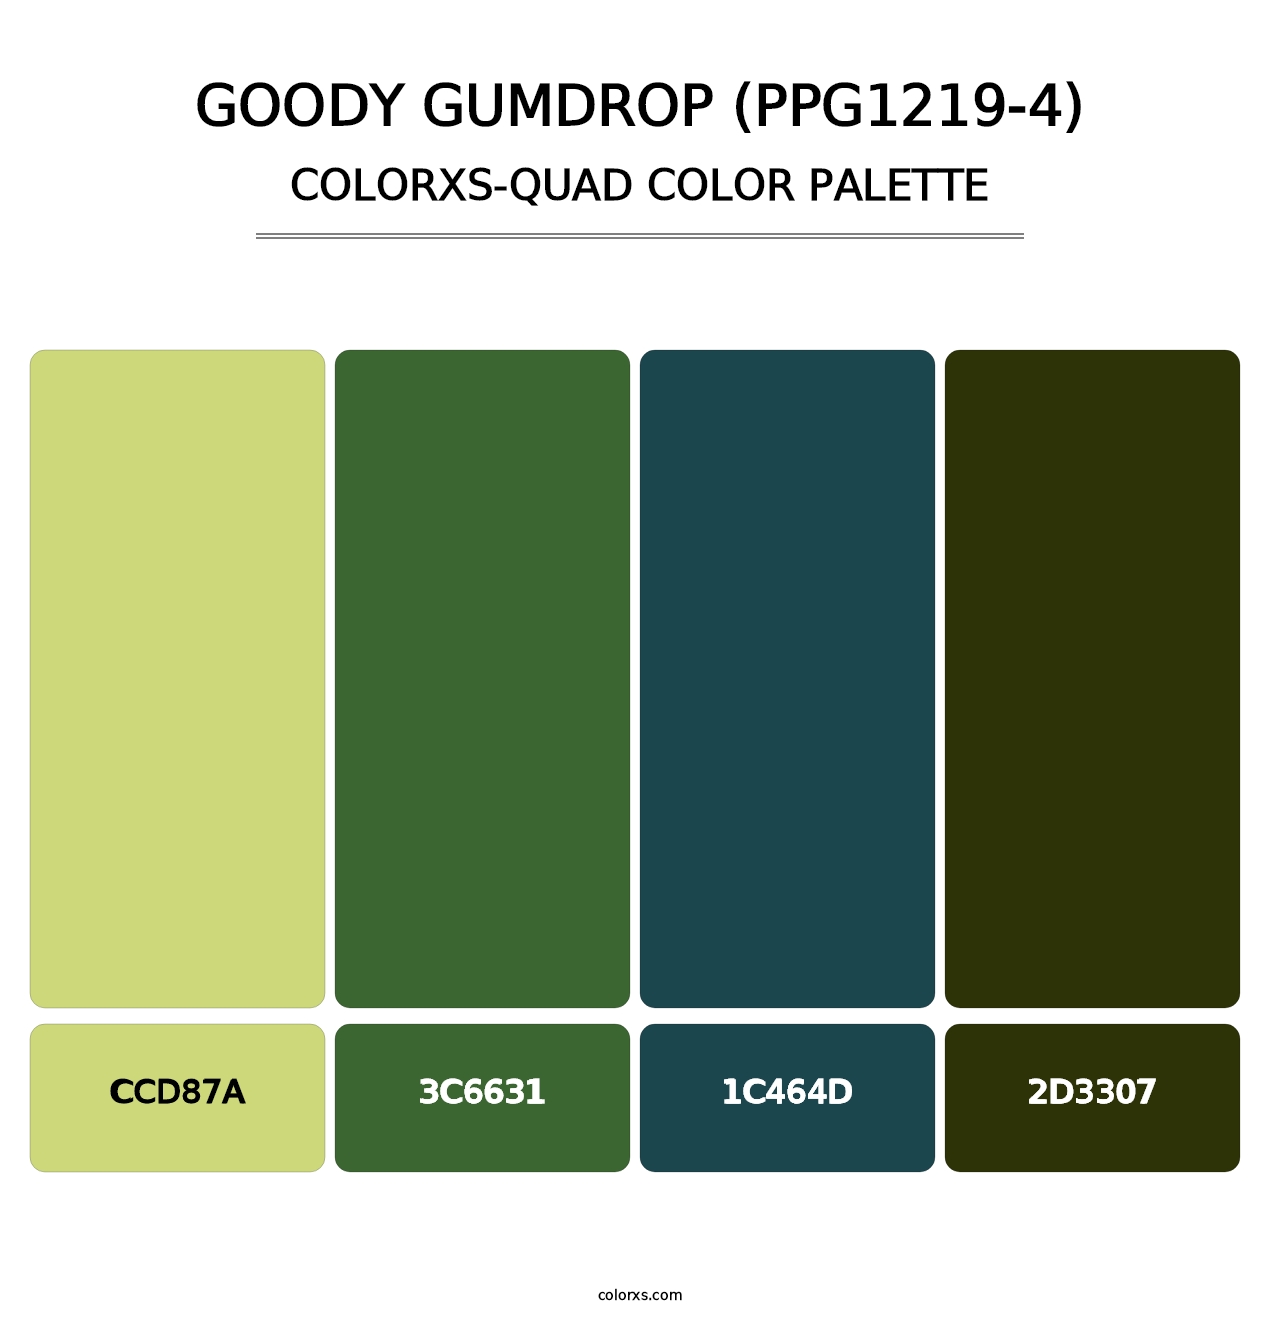 Goody Gumdrop (PPG1219-4) - Colorxs Quad Palette